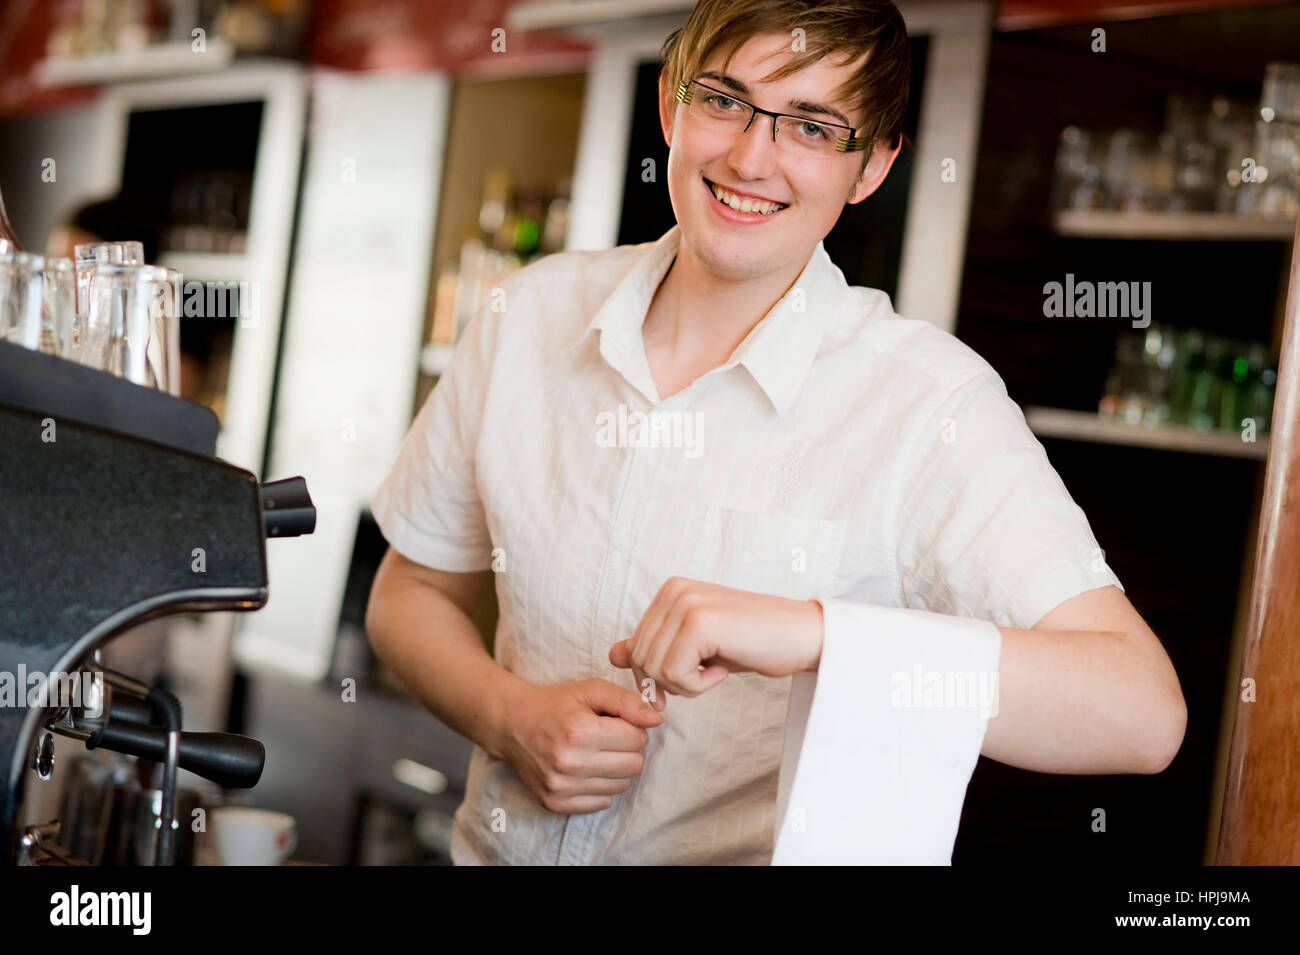 Model released , Kellner - waiter Stock Photo